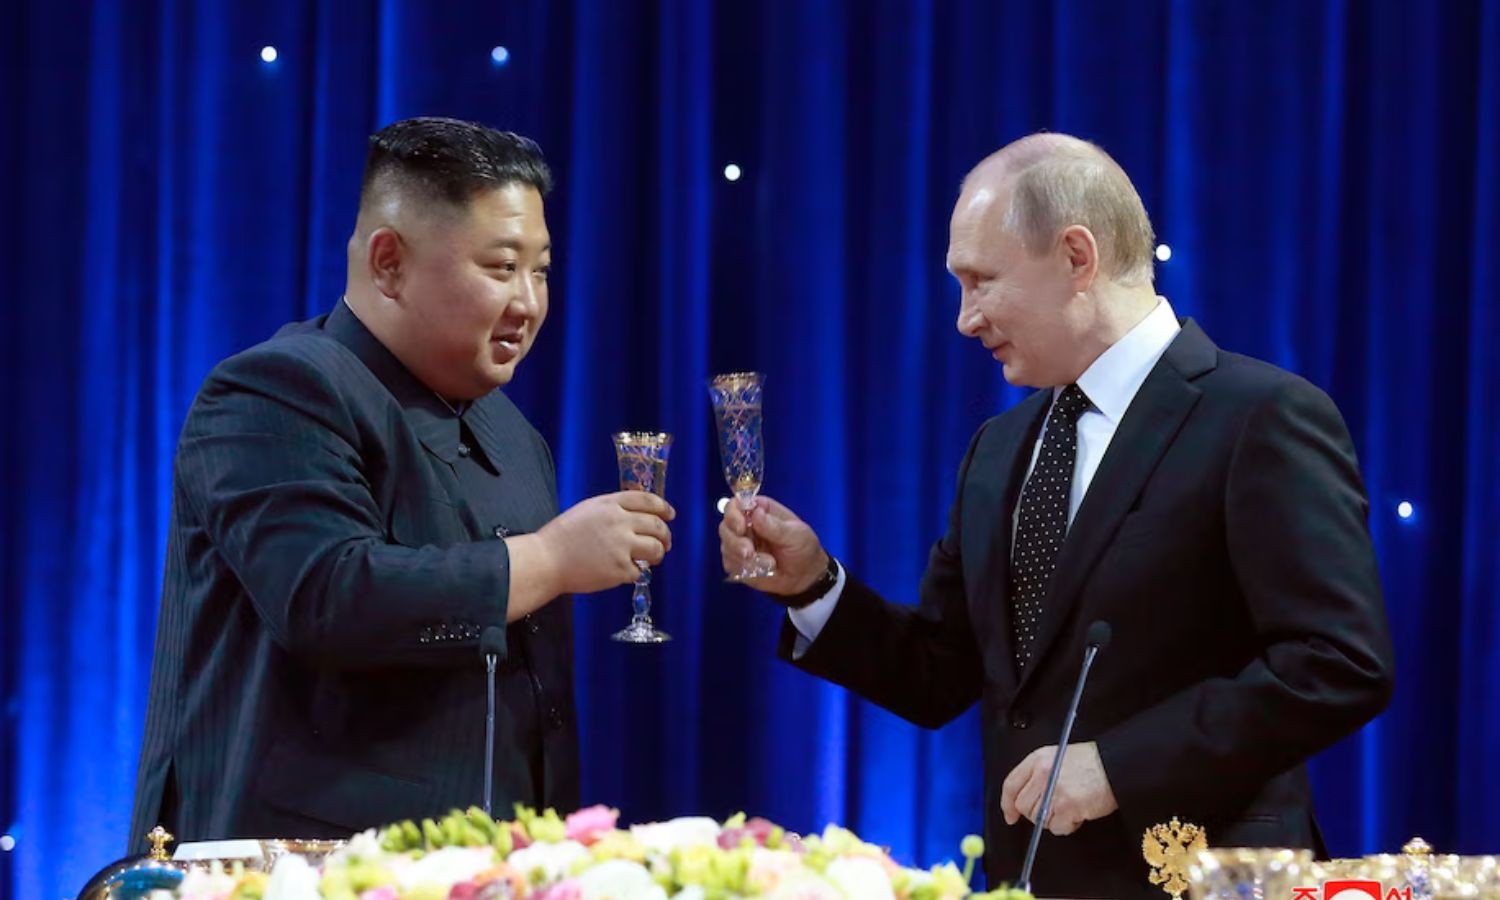 صورة تجمع رئيسي كوريا الشمالية وروسيا في 2019 (واشنطن بوست)